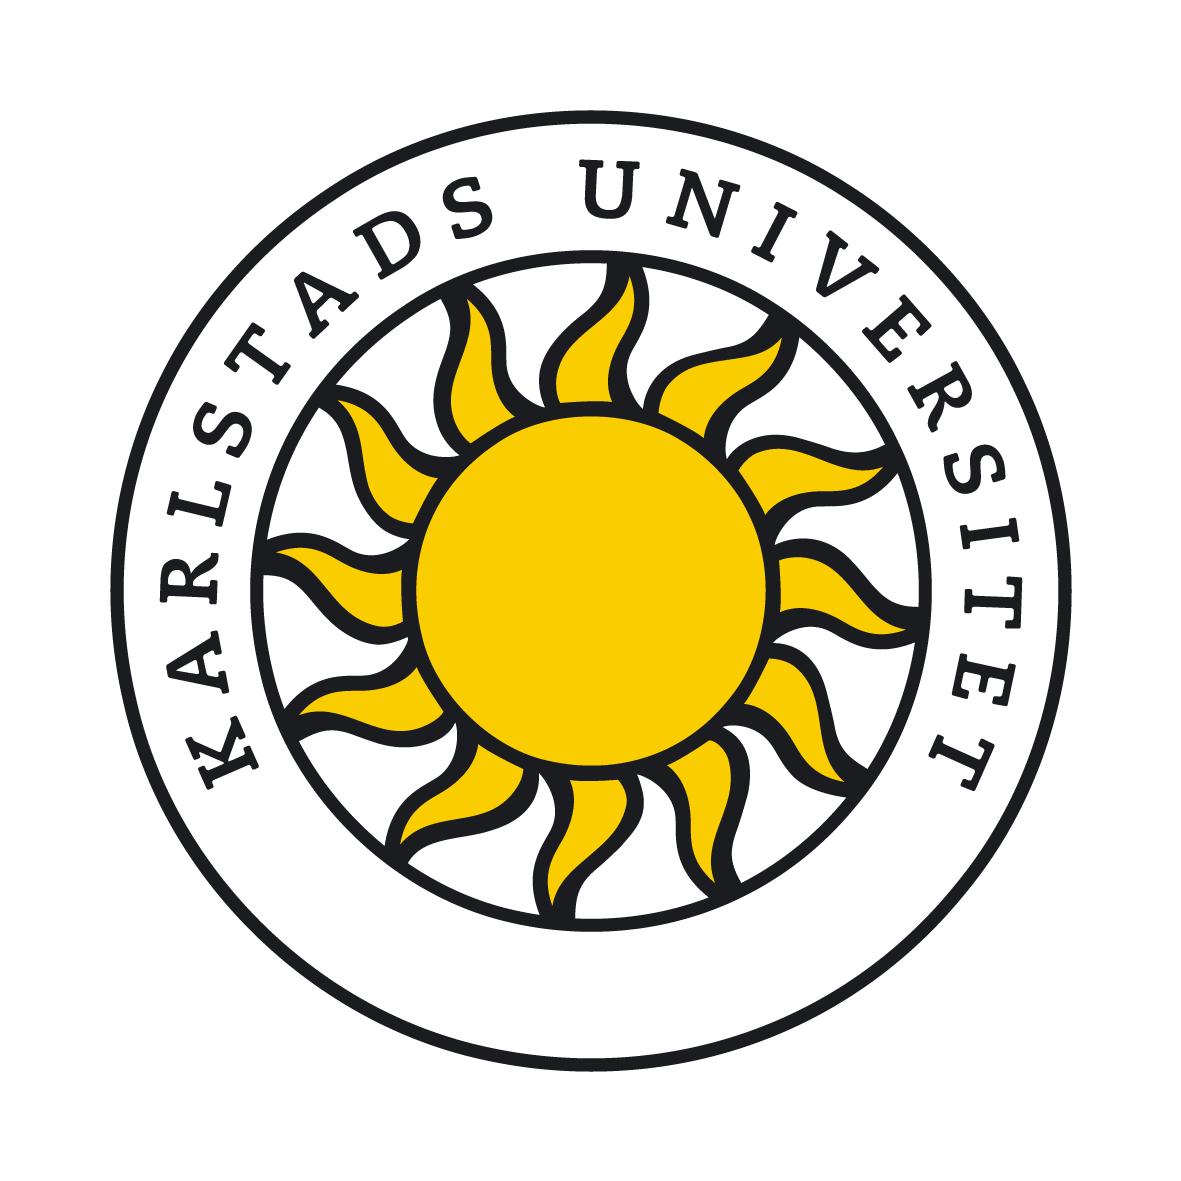   Karlstad University logo